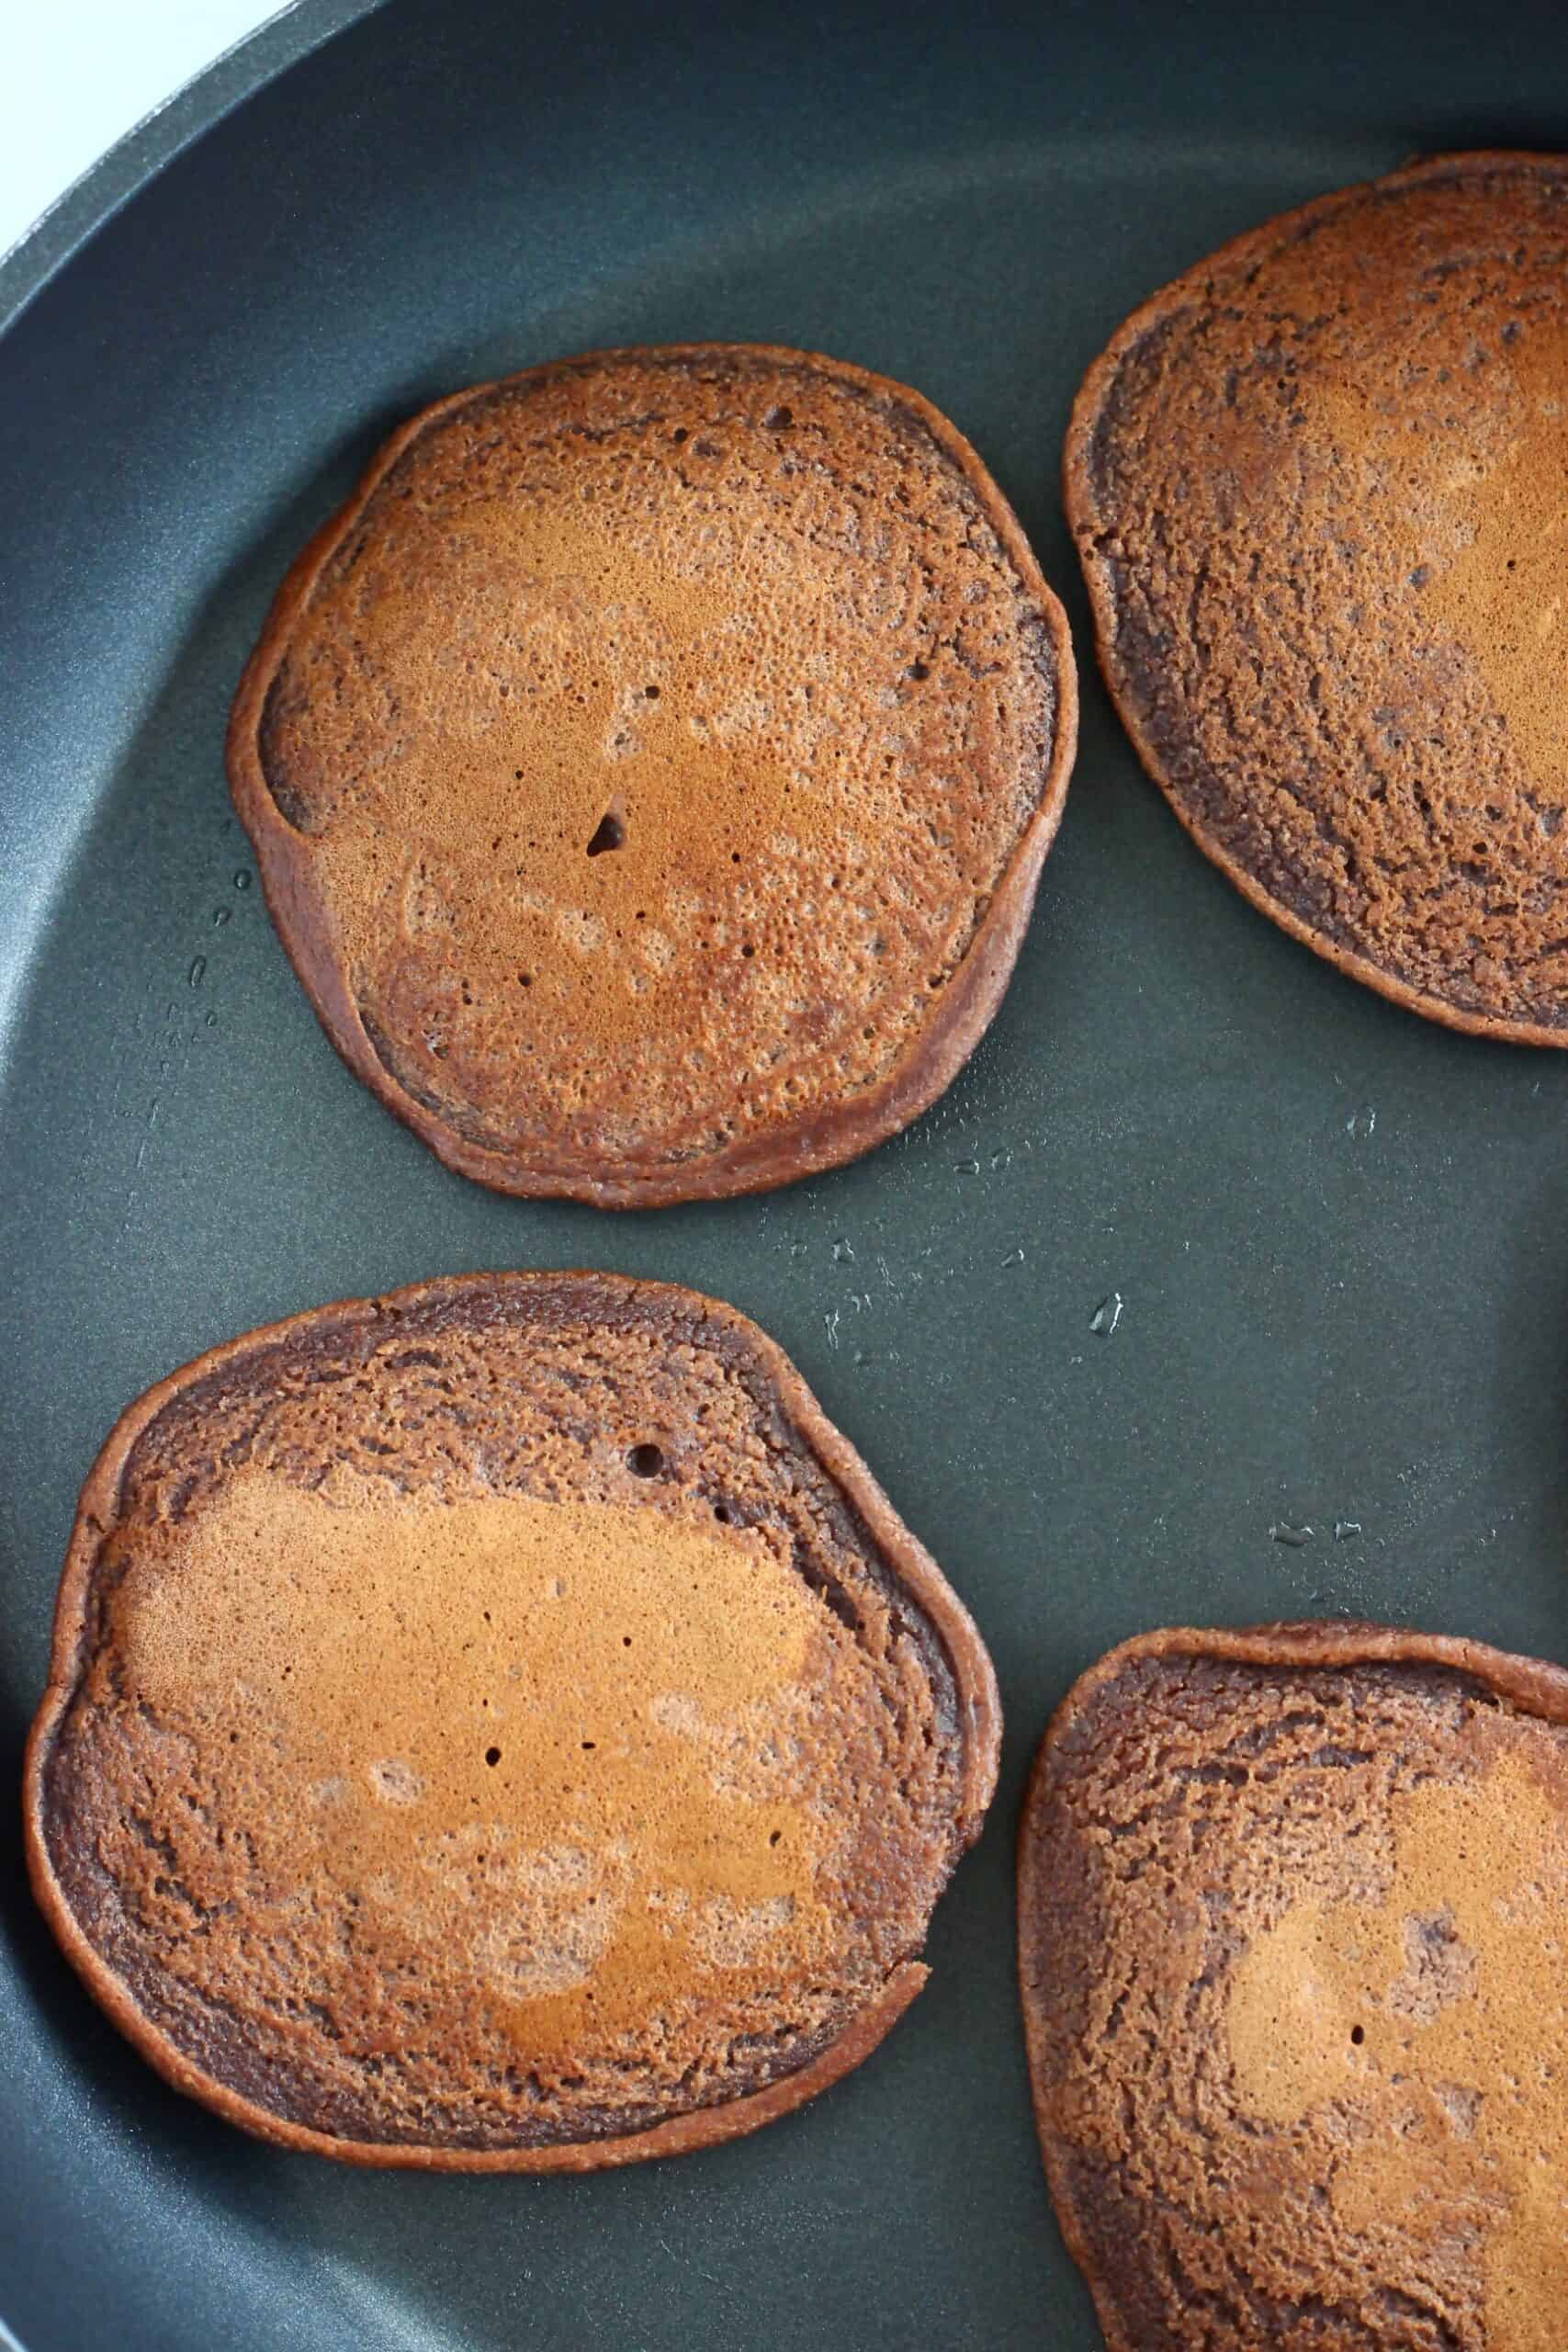 Gluten-free vegan chocolate pancakes in a frying pan